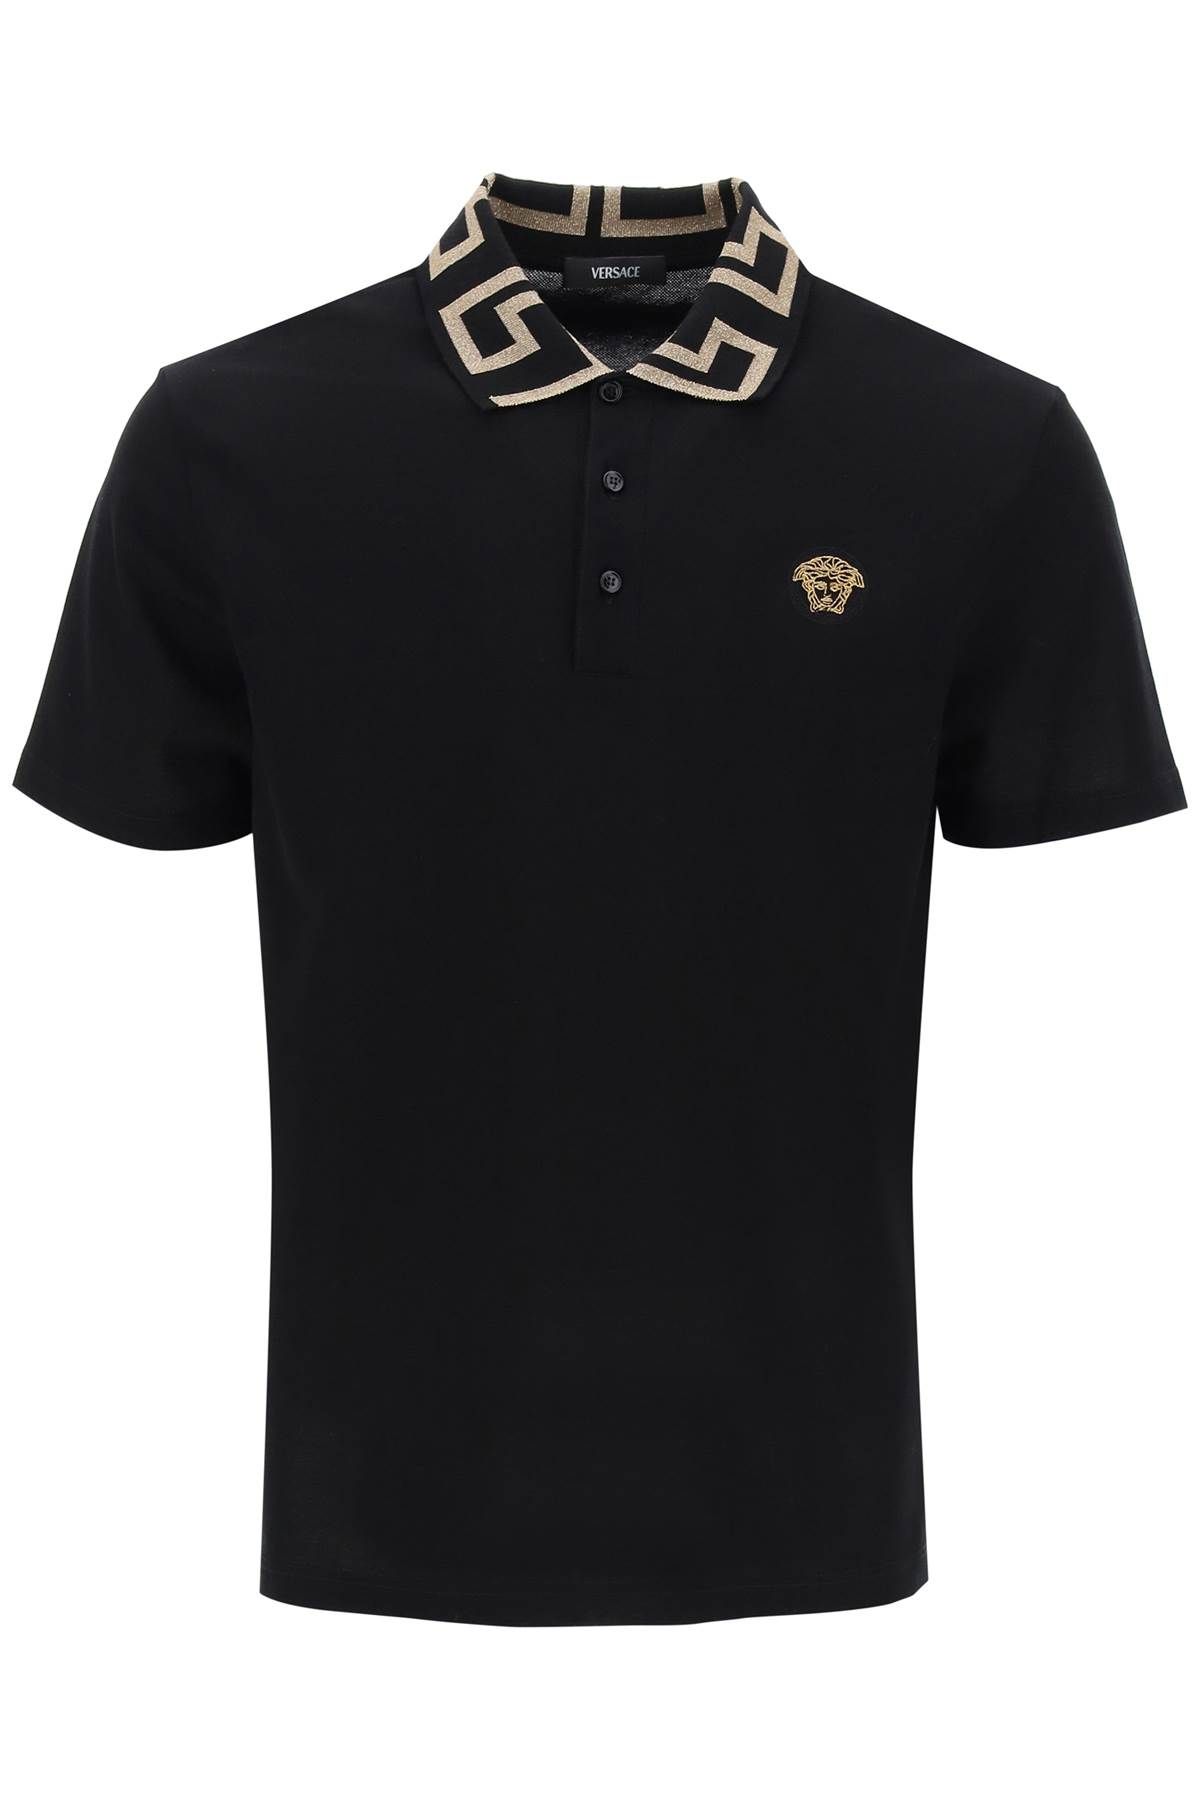 Versace VERSACE polo shirt with greca collar